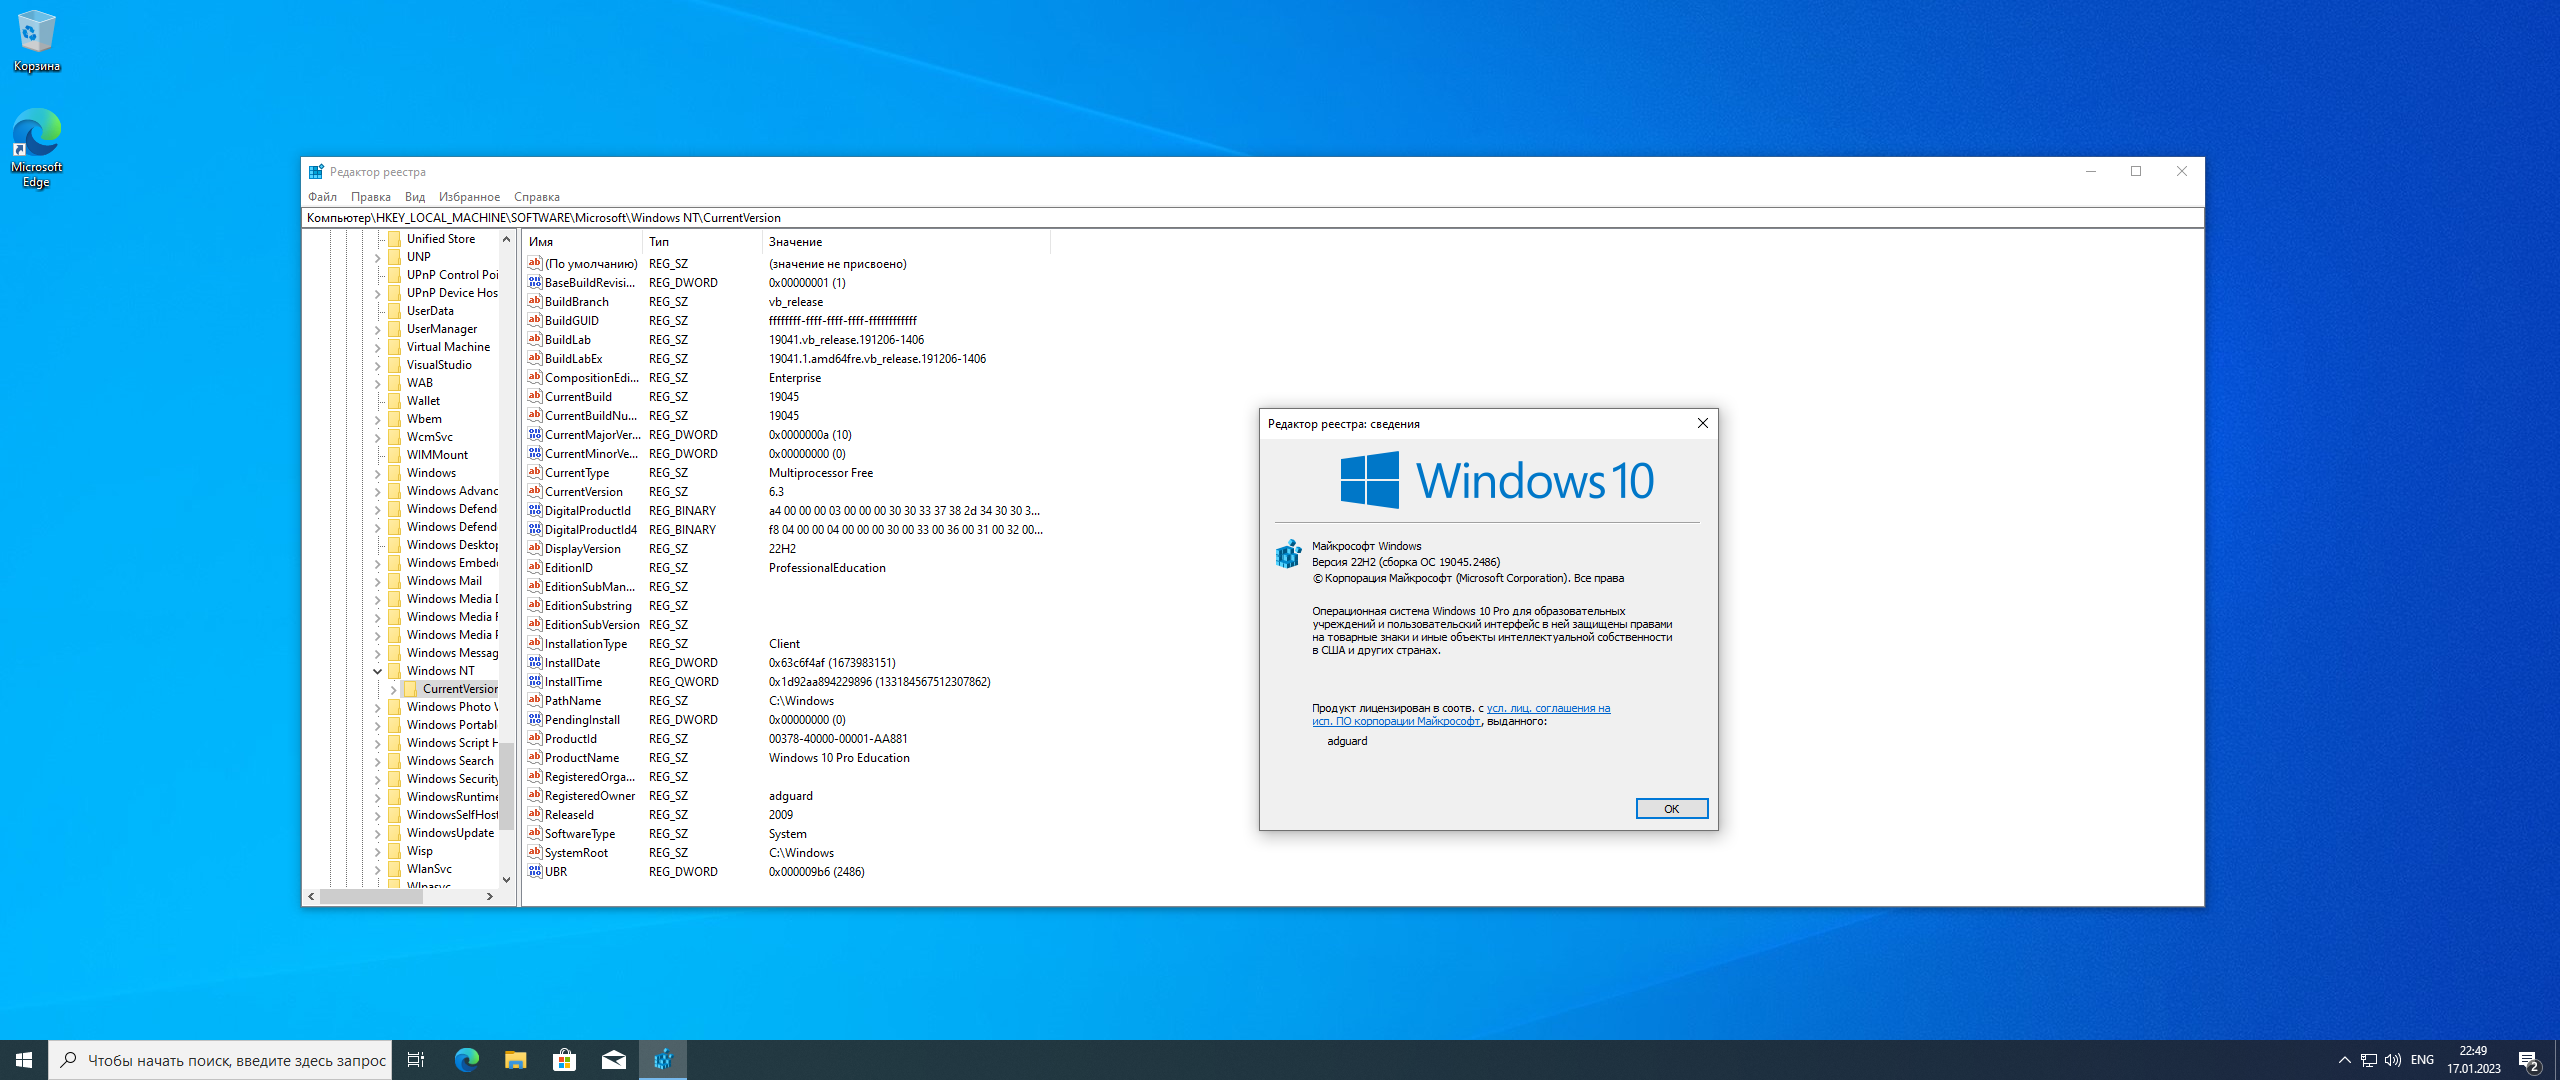 2023 10 25. Windows 10 22h2. Виндовс 10 версия 21h1. Windows 10 x64 22h2 MSDN 2023 чистый оригинальный ISO С md5 контролем. Windows 10 Version 22h2 для x64.